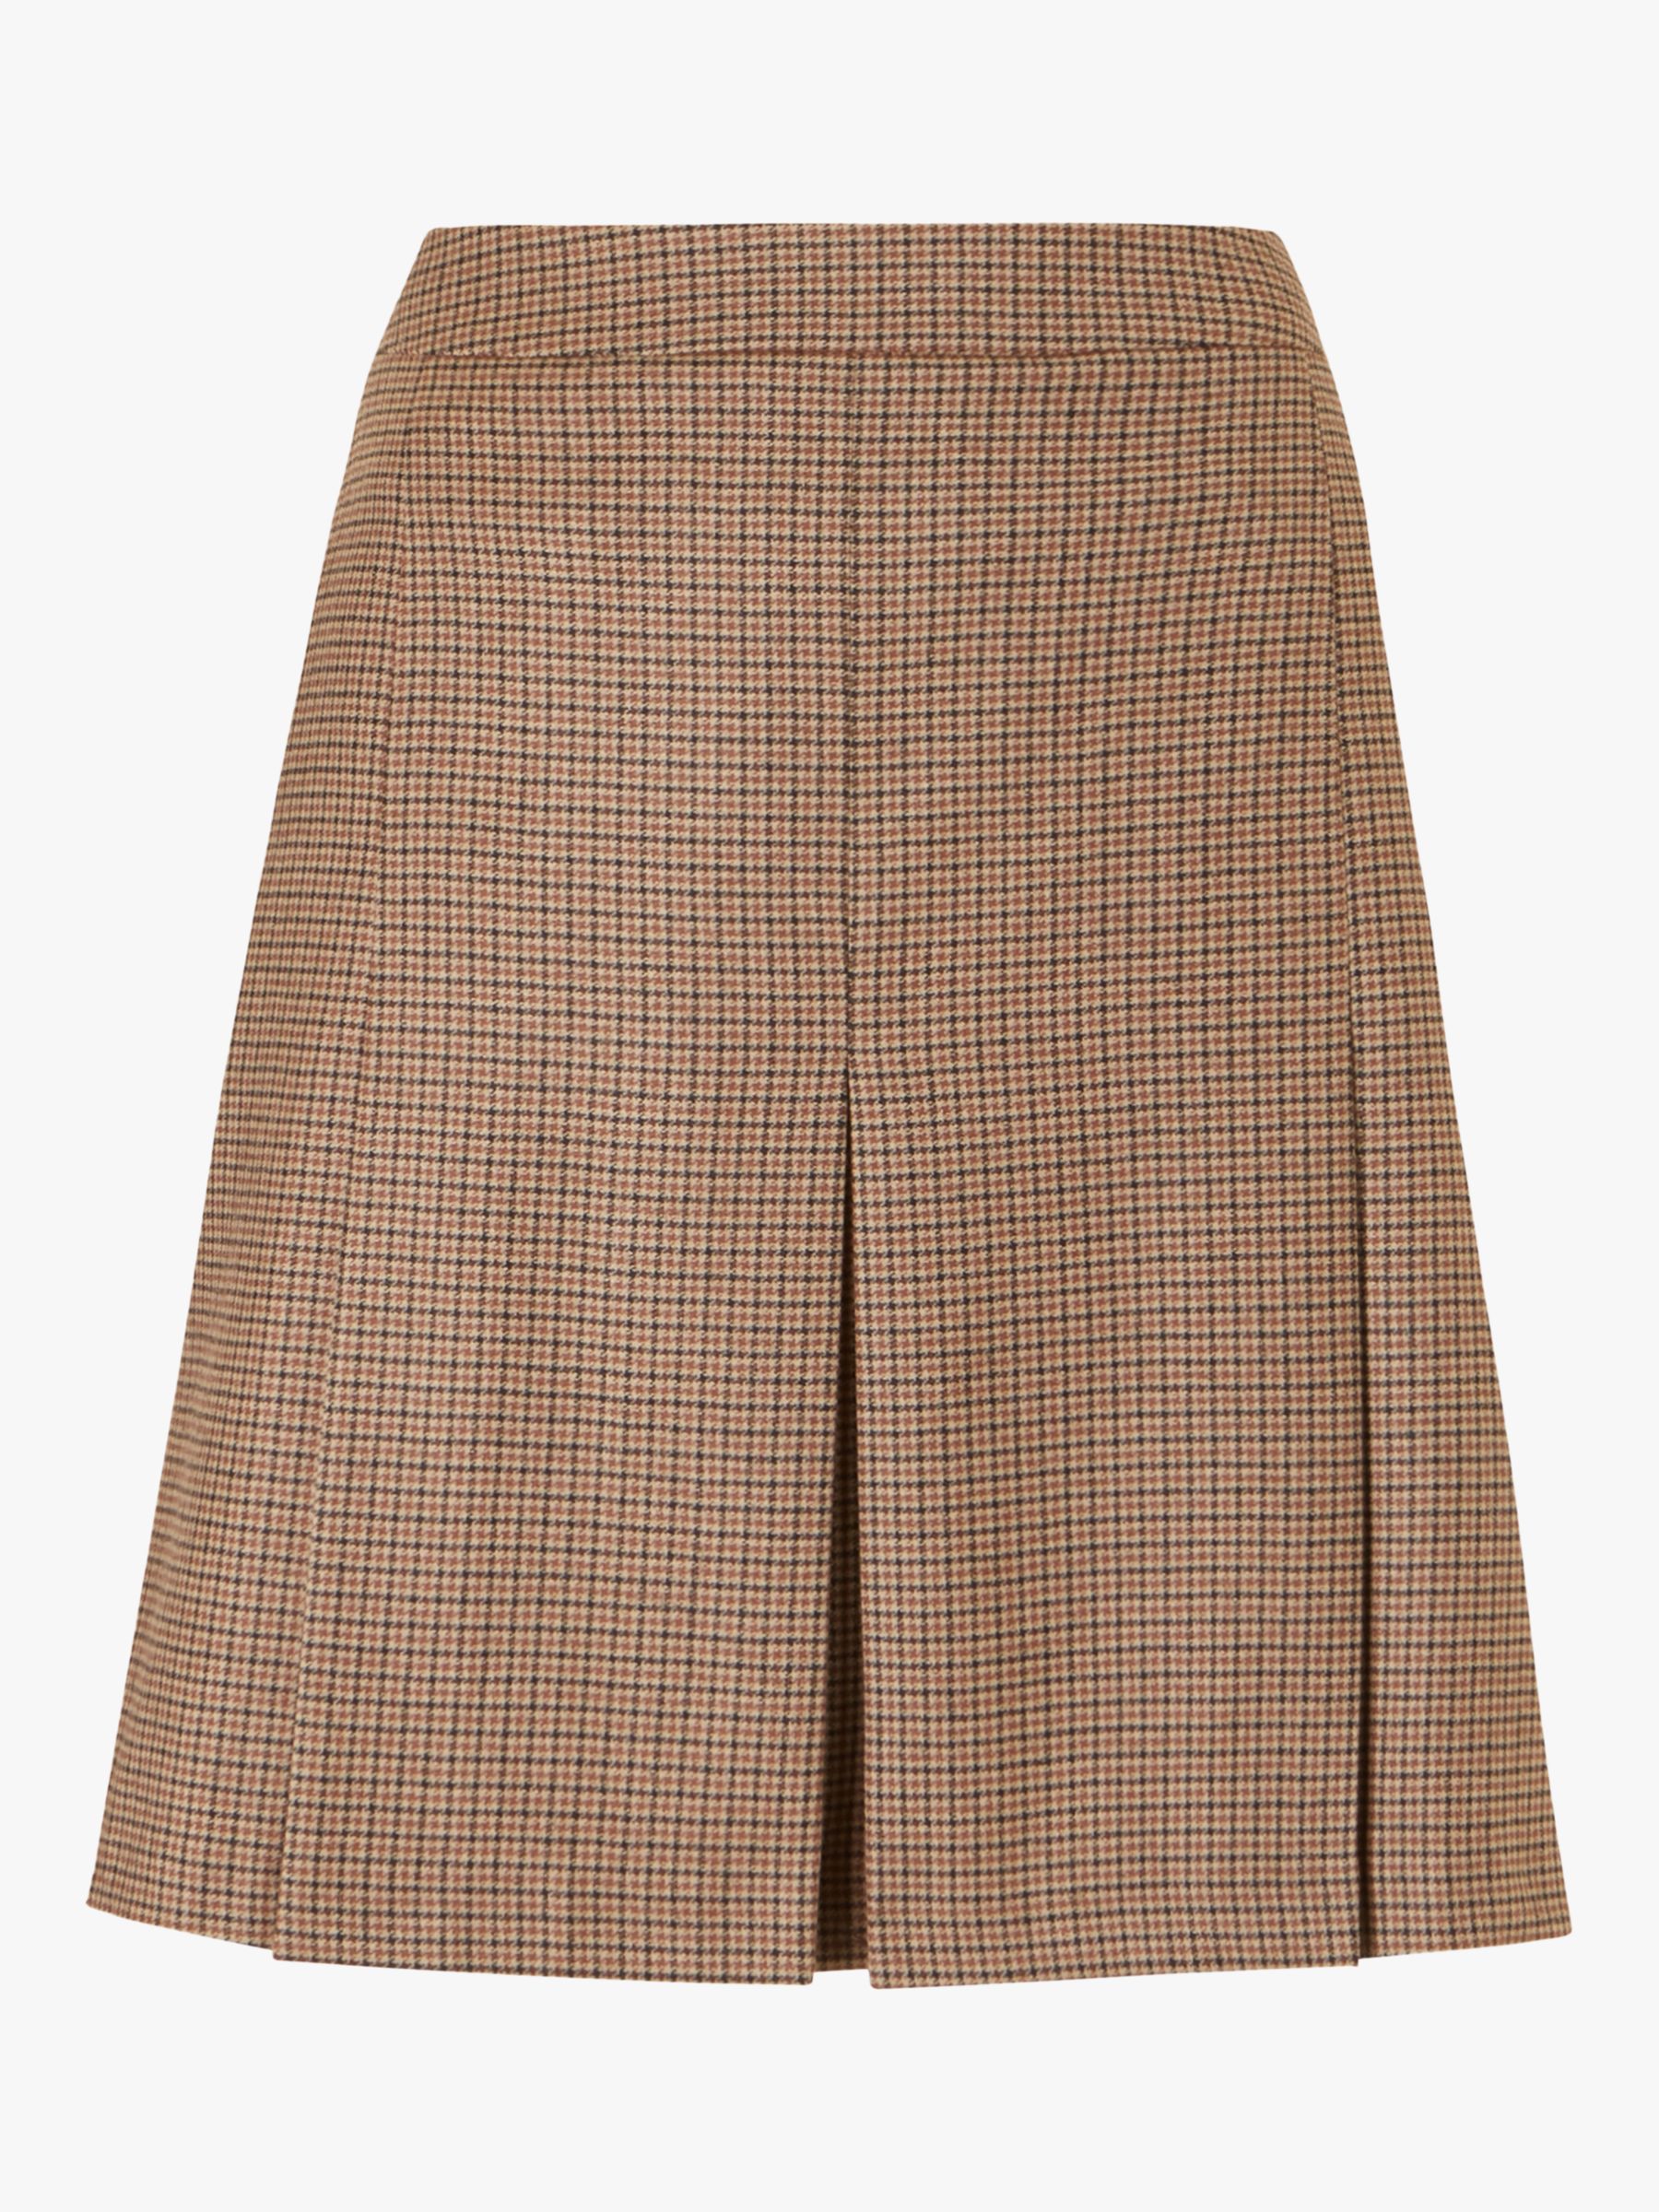 Baukjen Niki Check A-Line Skirt, Brown/Multi at John Lewis & Partners